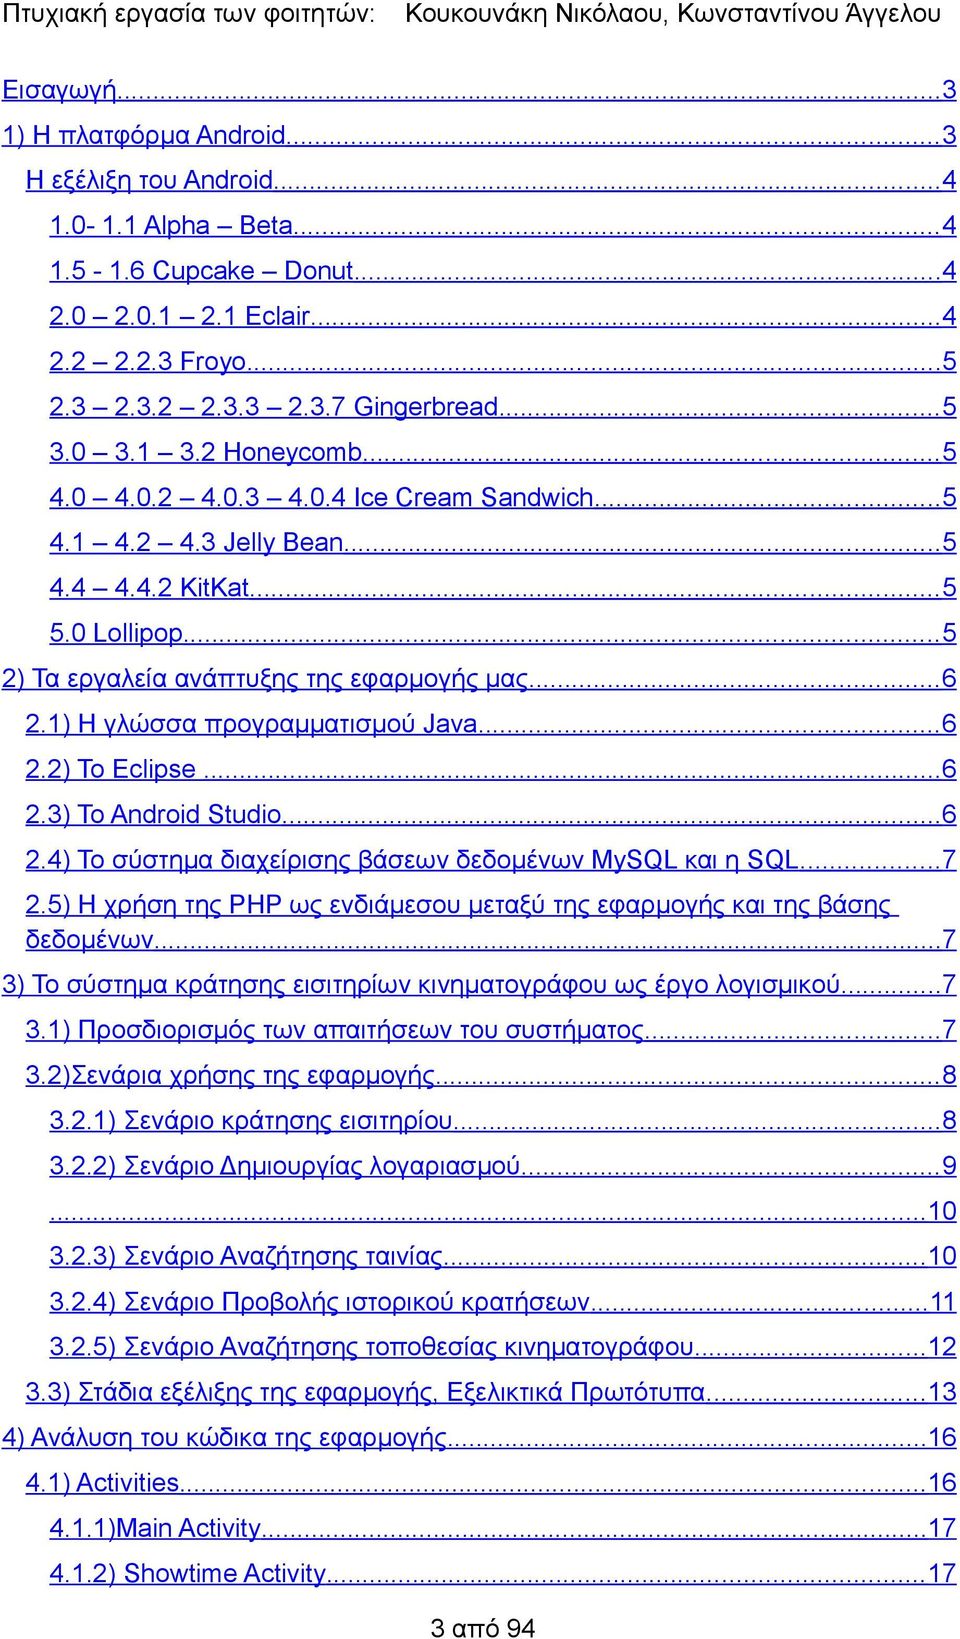 1) Η γλώσσα προγραμματισμού Java... 6 2.2) Το Eclipse...6 2.3) Το Android Studio...6 2.4) Το σύστημα διαχείρισης βάσεων δεδομένων MySQL και η SQL...7 2.